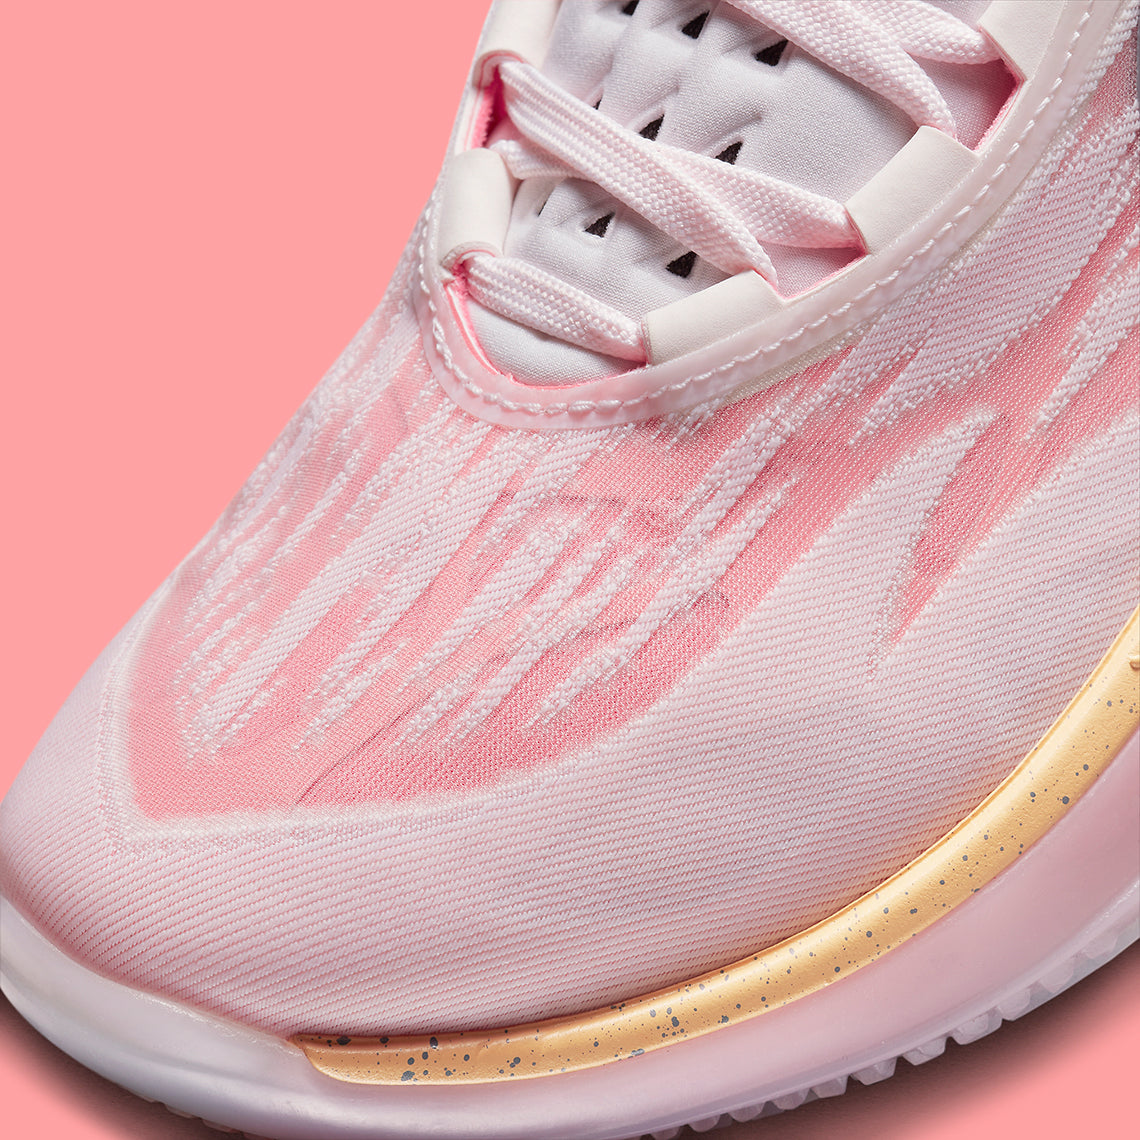 Nike Zoom GT Cut 2 “Pearl Pink”